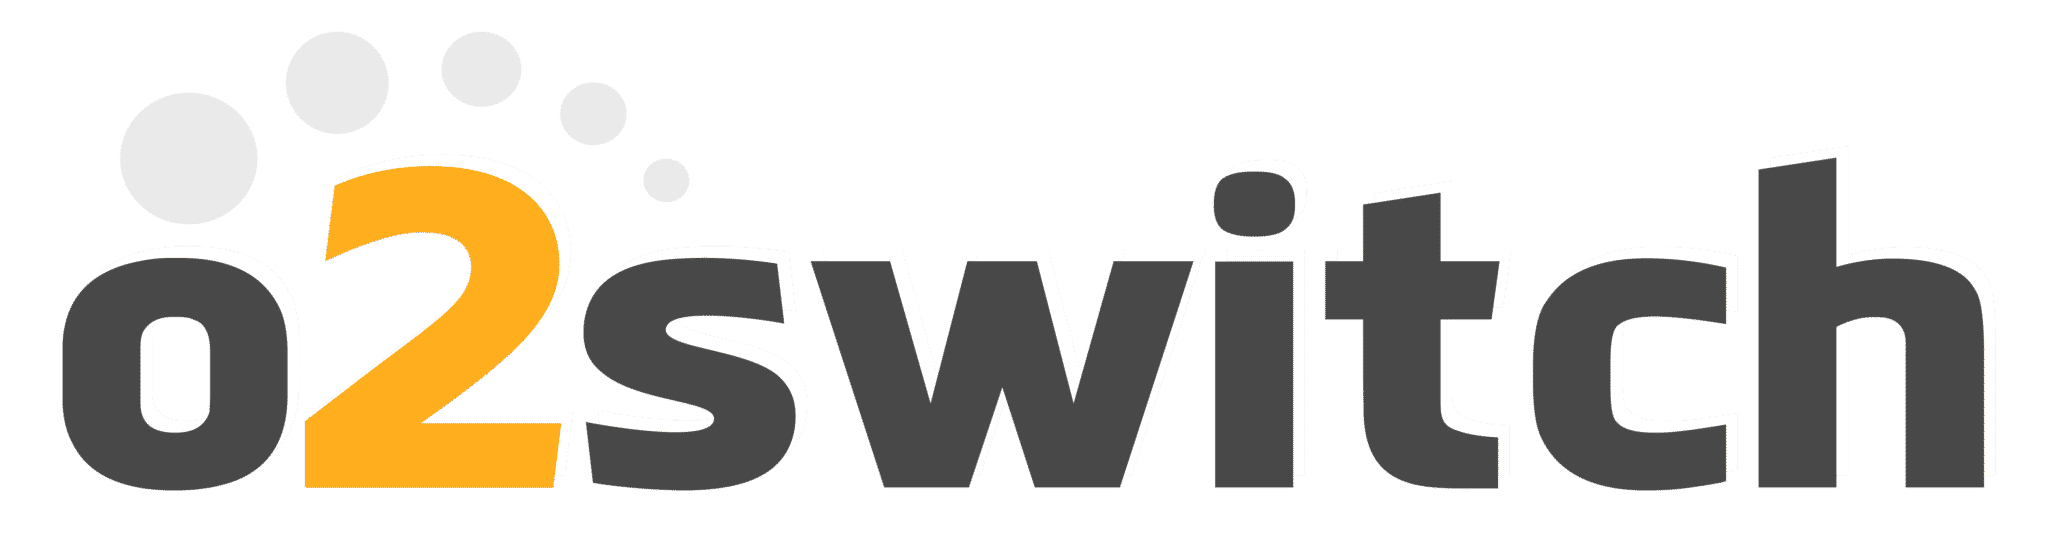 o2-switch-logo